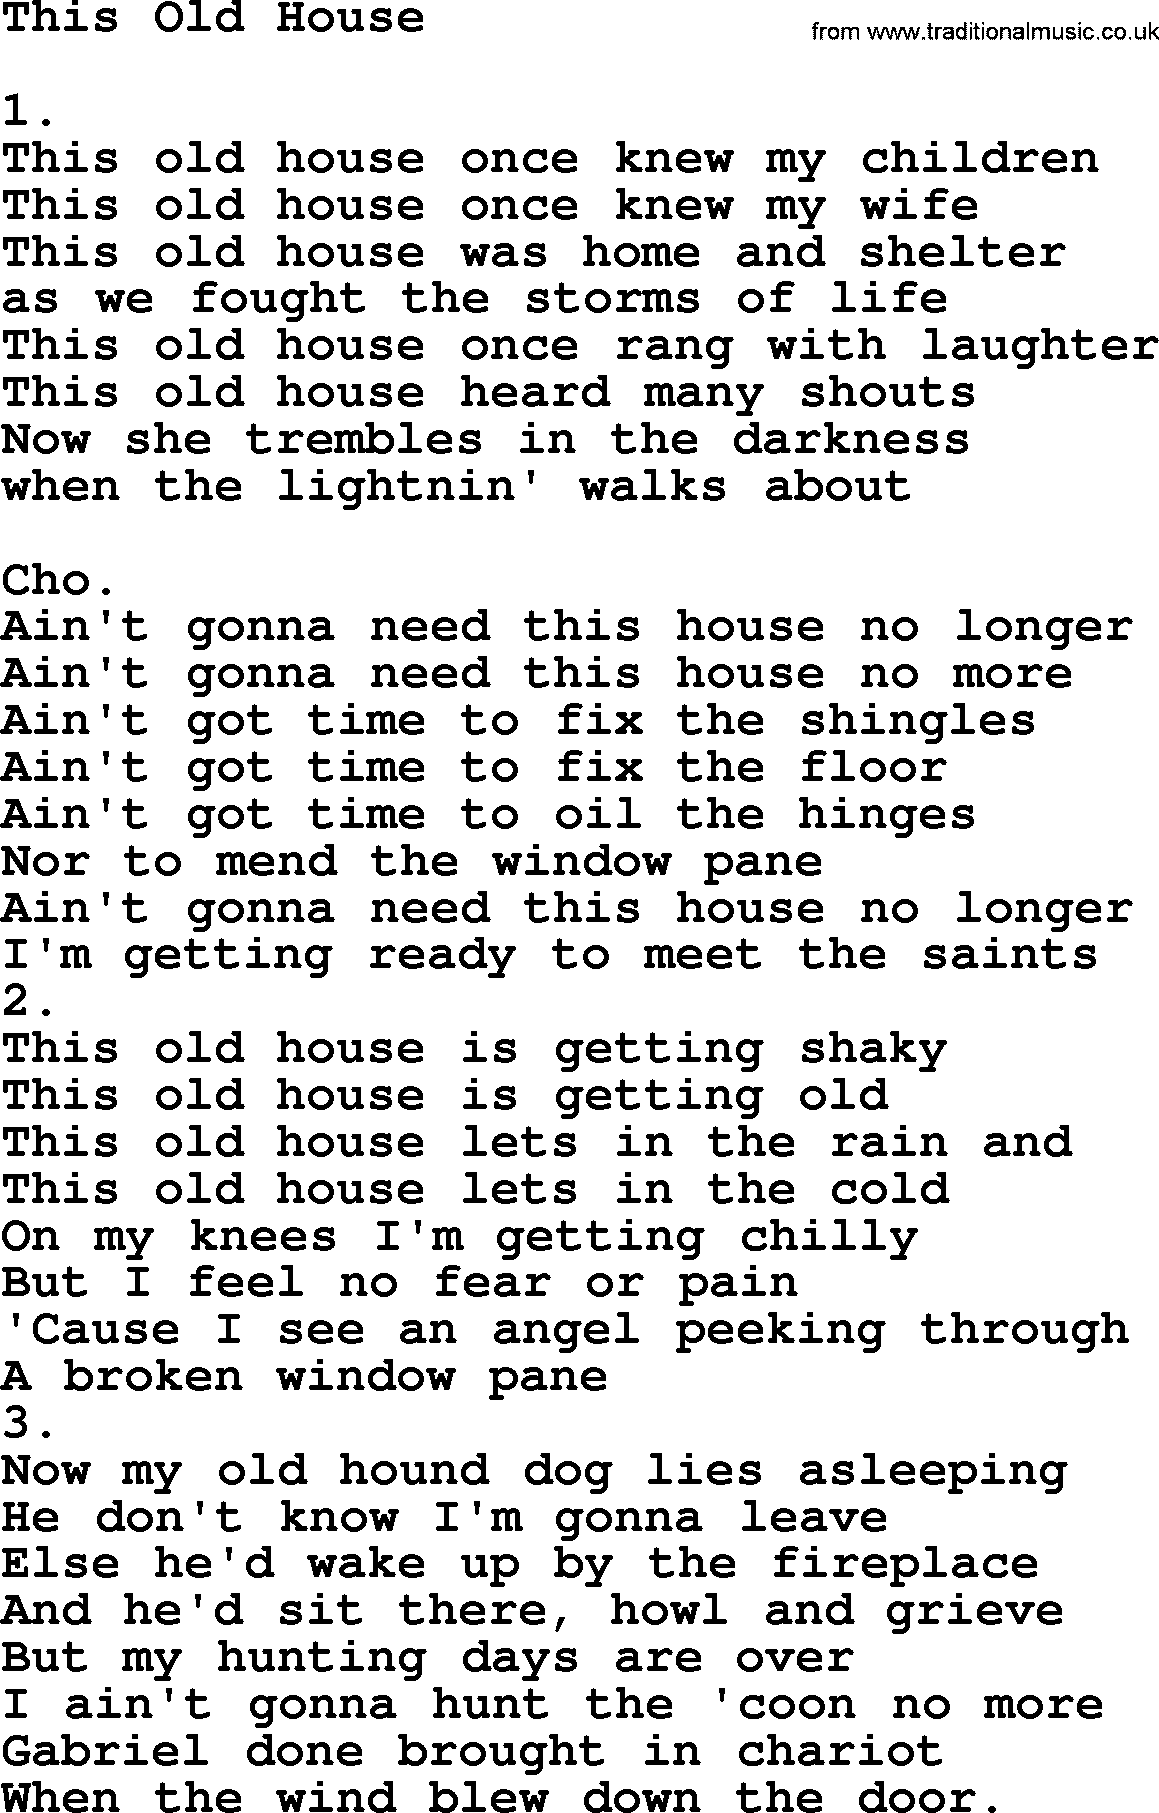 Back to the old house, lyrics